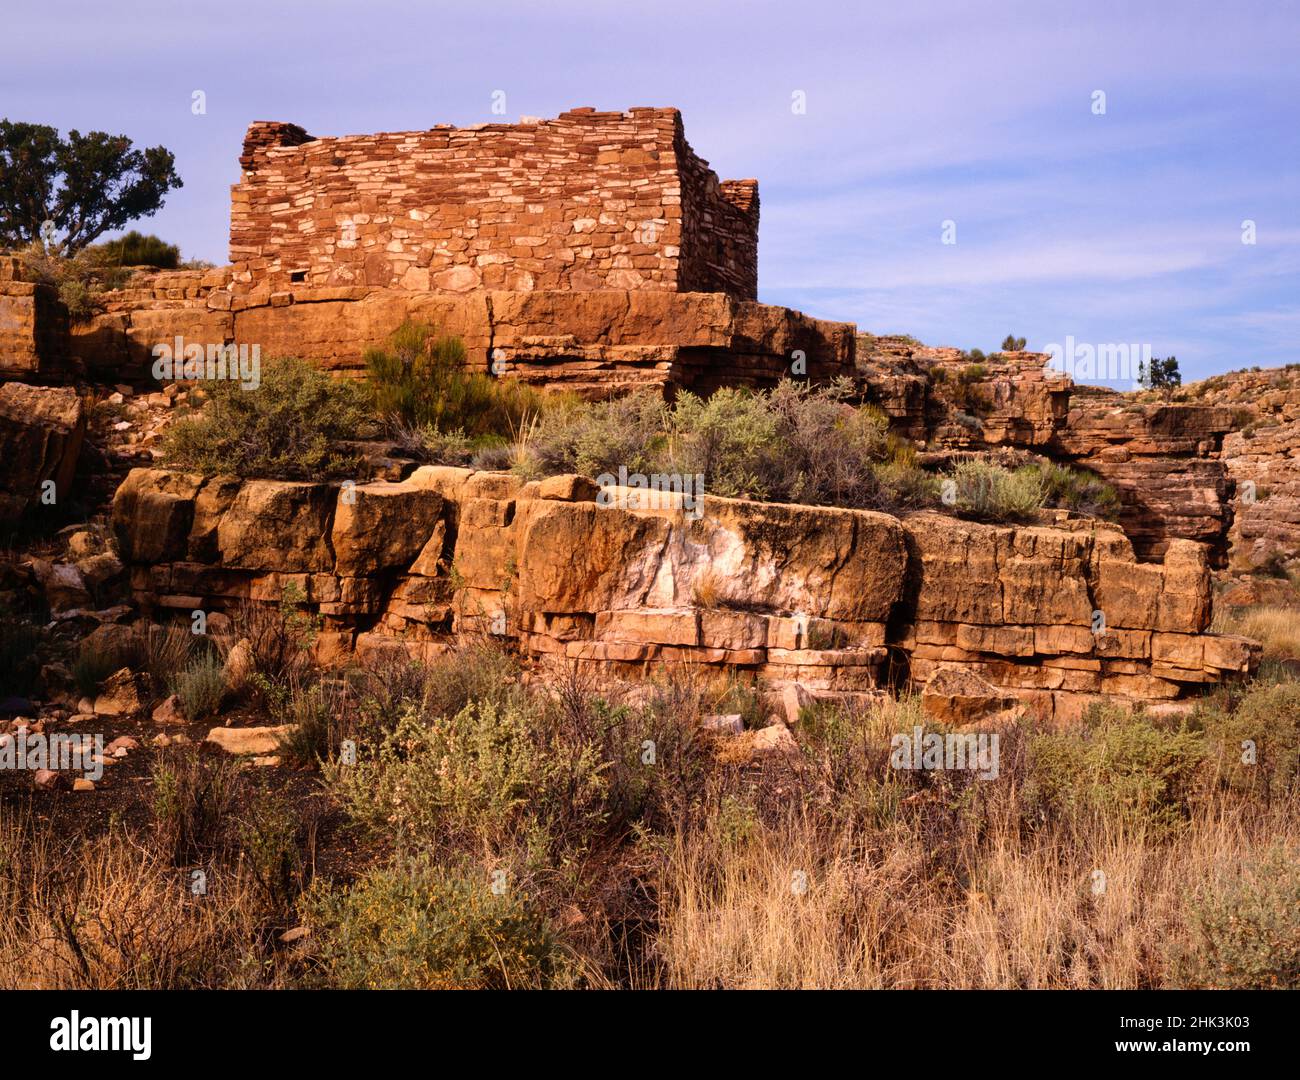 Estados Unidos, Arizona, Monumento Nacional de Wupatki. Ruinas indias Anasazi en el Cañón Box. Crédito como: Dennis Flaherty / Jaynes Gallery / DanitaDelimont.com Foto de stock